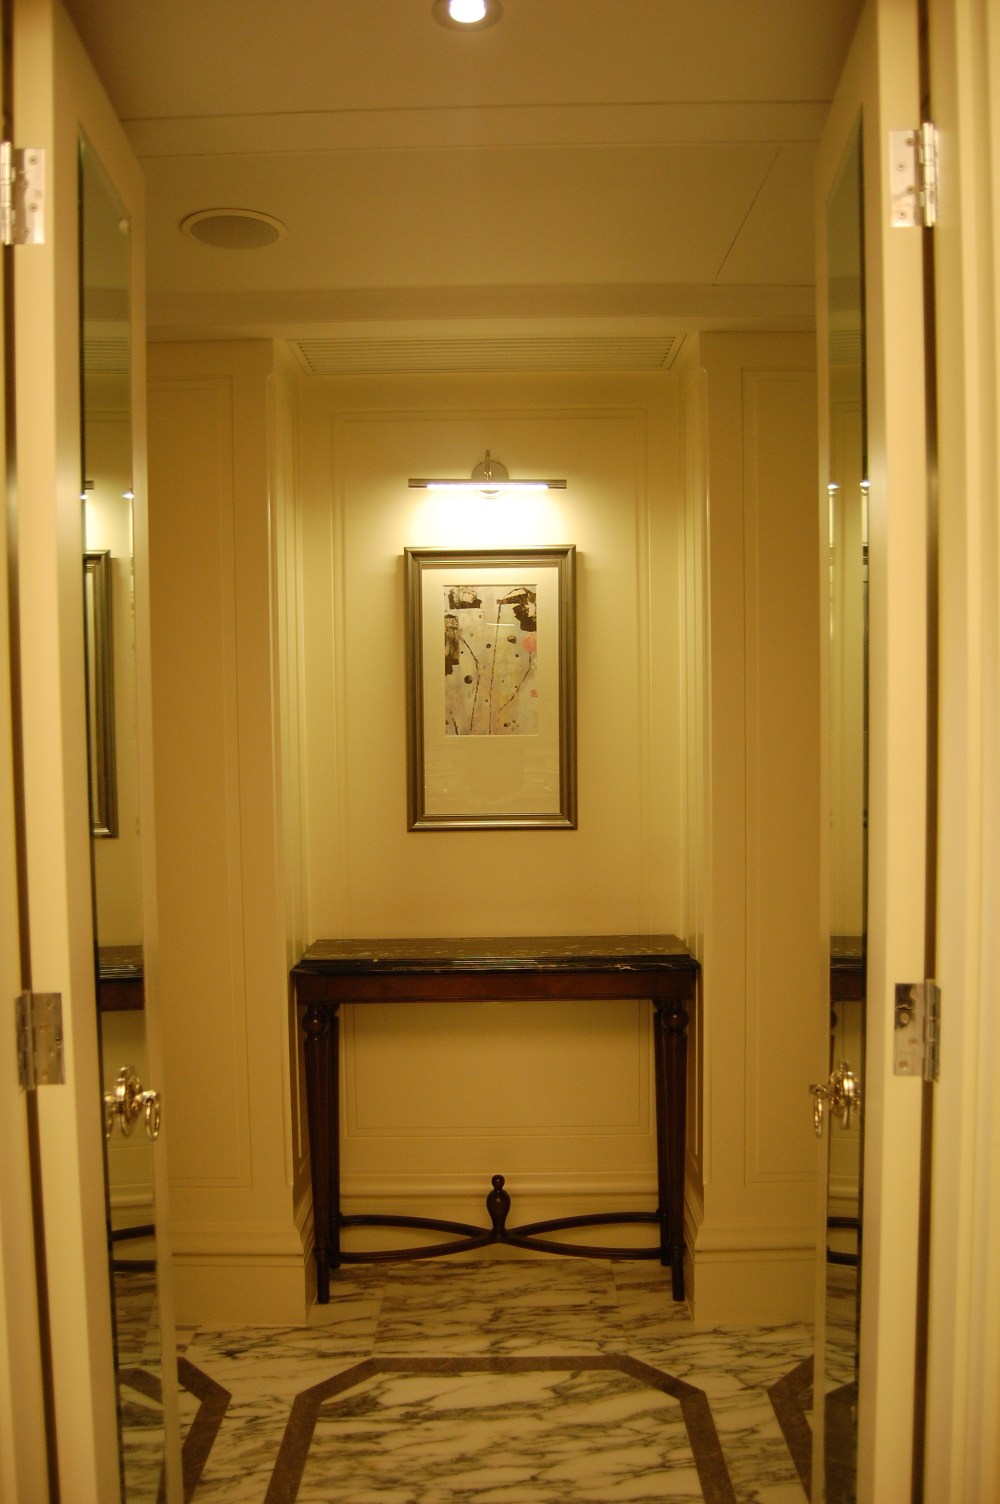 上海华尔道夫酒店(The Waldorf Astoria OnTheBund)(HBA)10.9第10页更新_DSC_0468.JPG